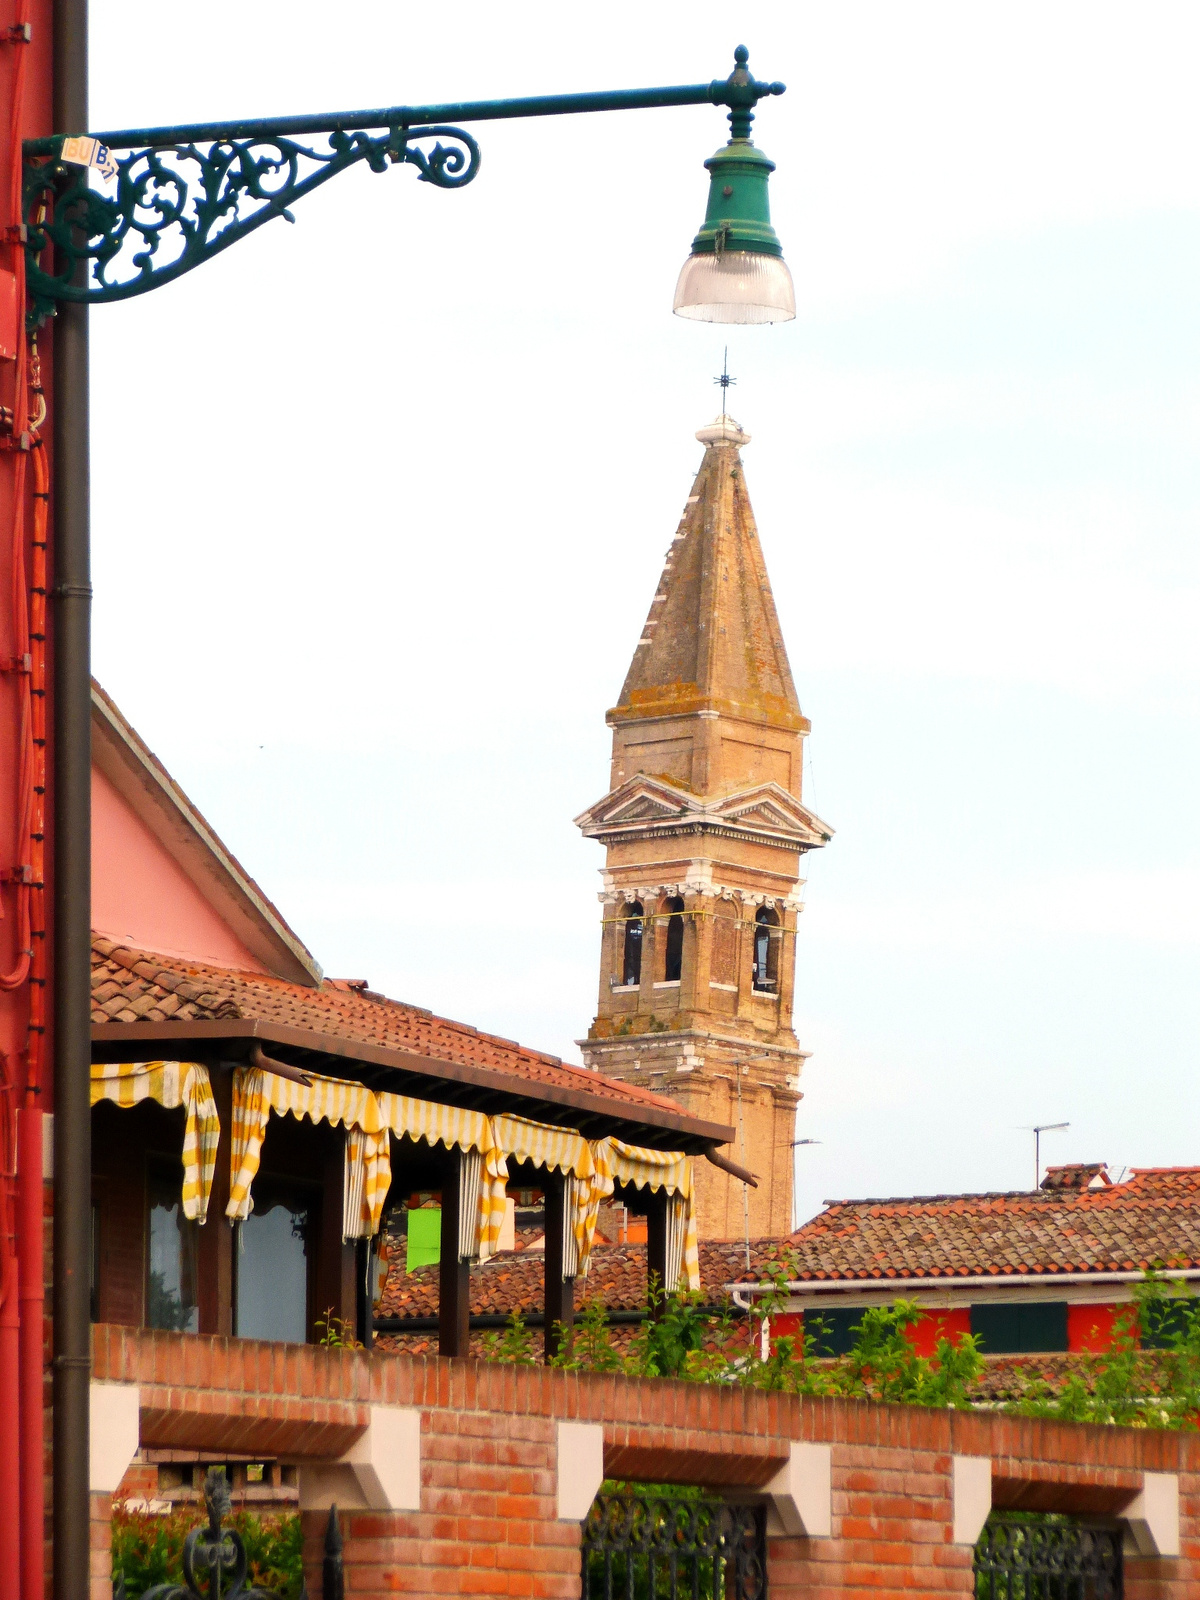 San Martino templom ferde tornya